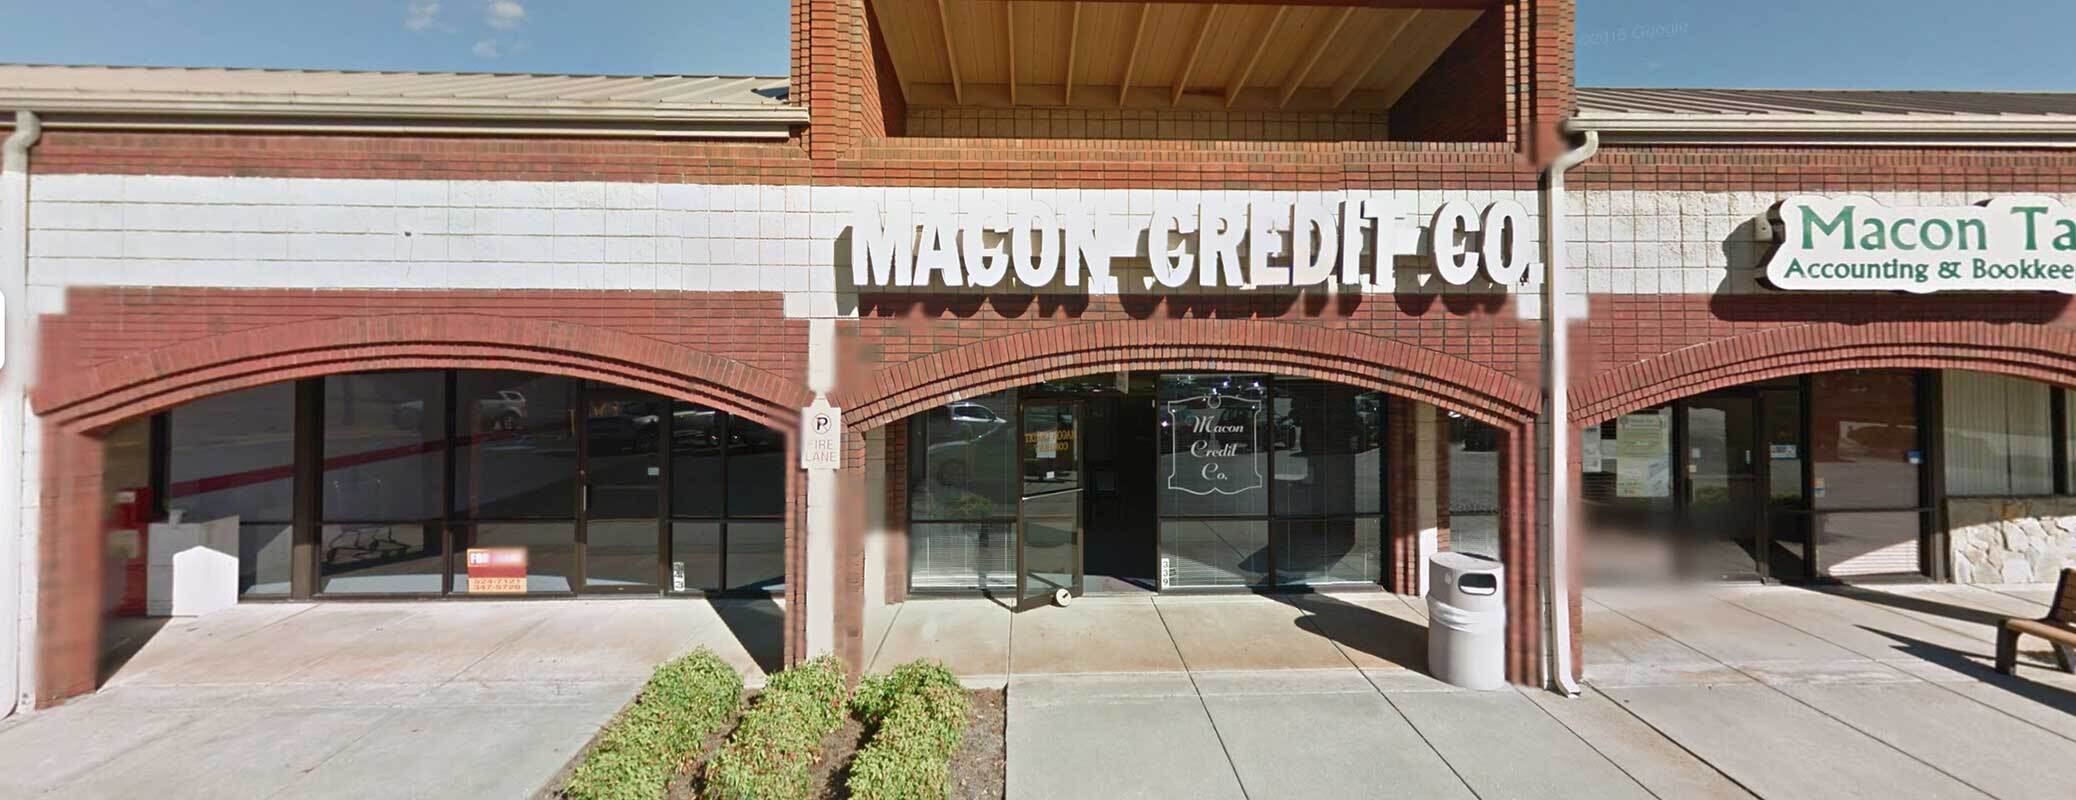 macon credit company brick building in franklin north carolina